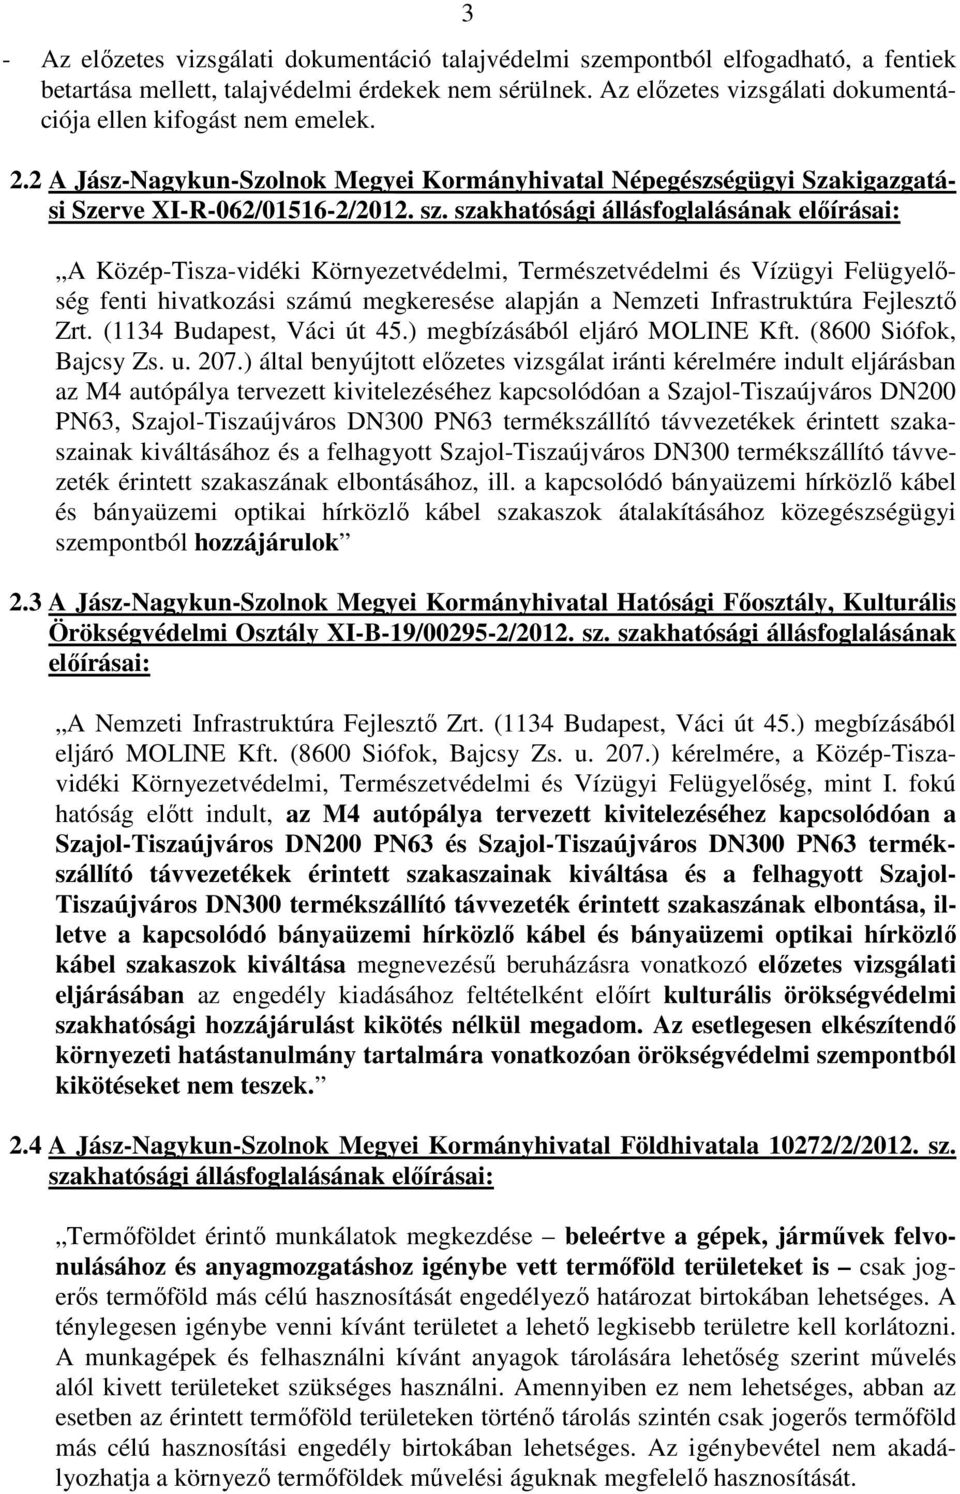 szakhatósági állásfoglalásának előírásai: A Közép-Tisza-vidéki Környezetvédelmi, Természetvédelmi és Vízügyi Felügyelőség fenti hivatkozási számú megkeresése alapján a Nemzeti Infrastruktúra